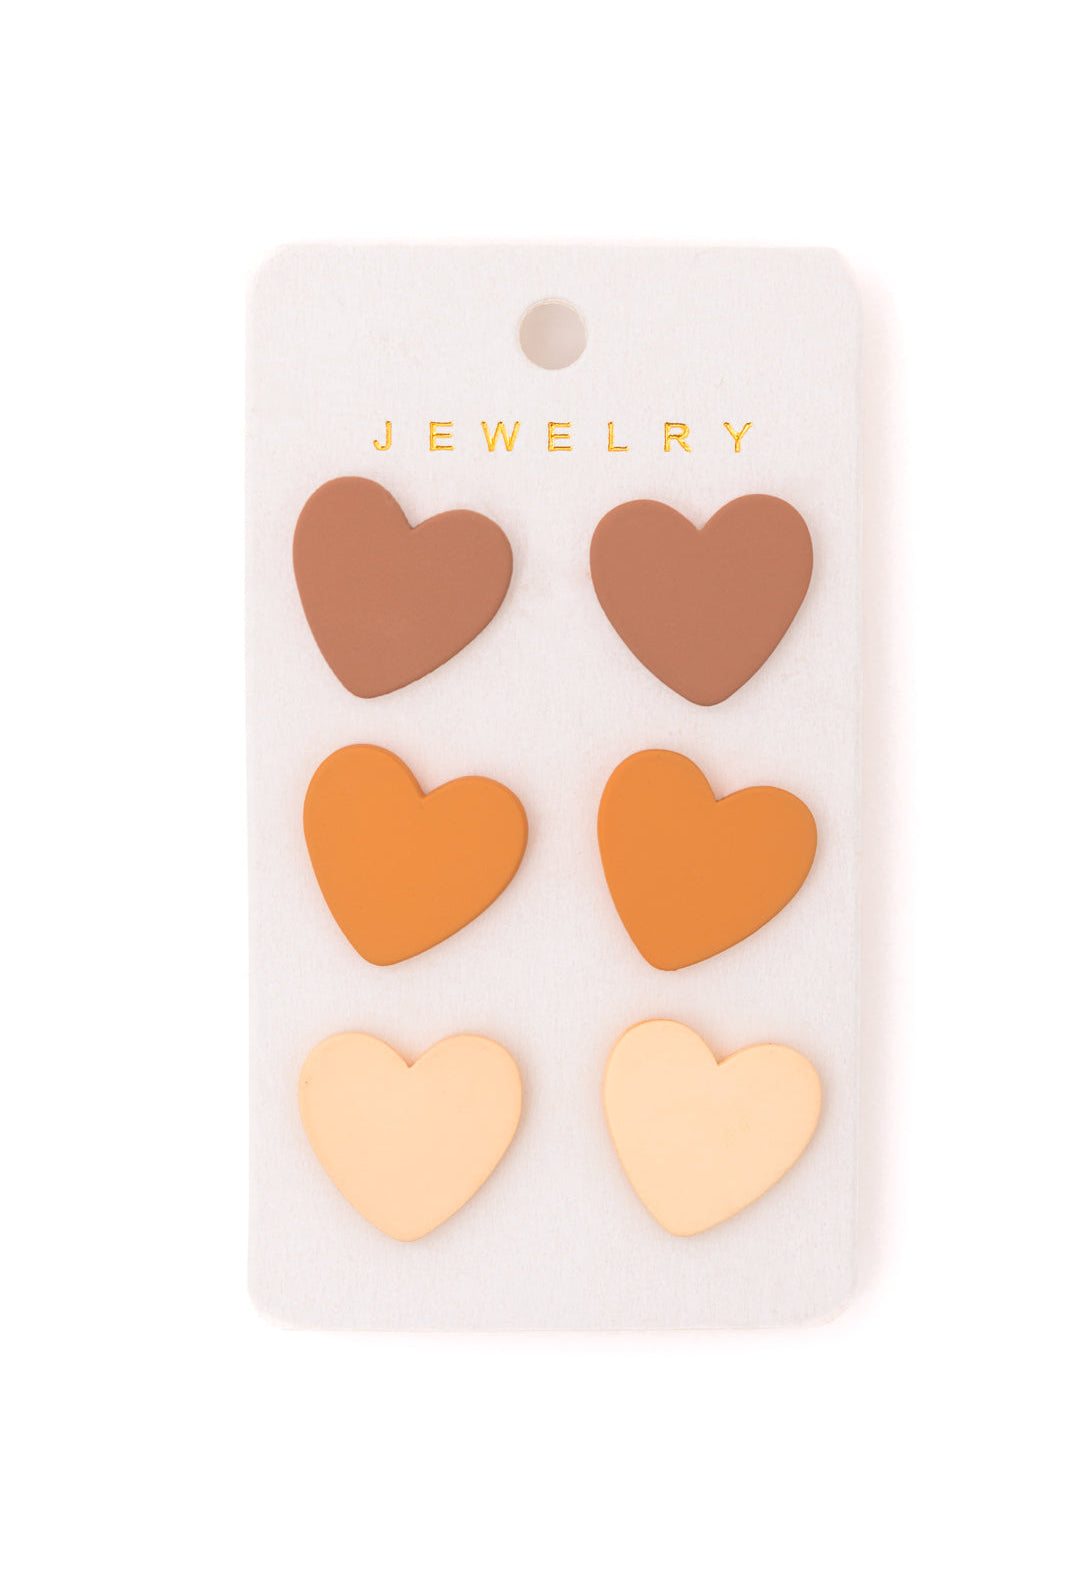 Triple Hearts Studs in Brown-Earrings-Krush Kandy, Women's Online Fashion Boutique Located in Phoenix, Arizona (Scottsdale Area)